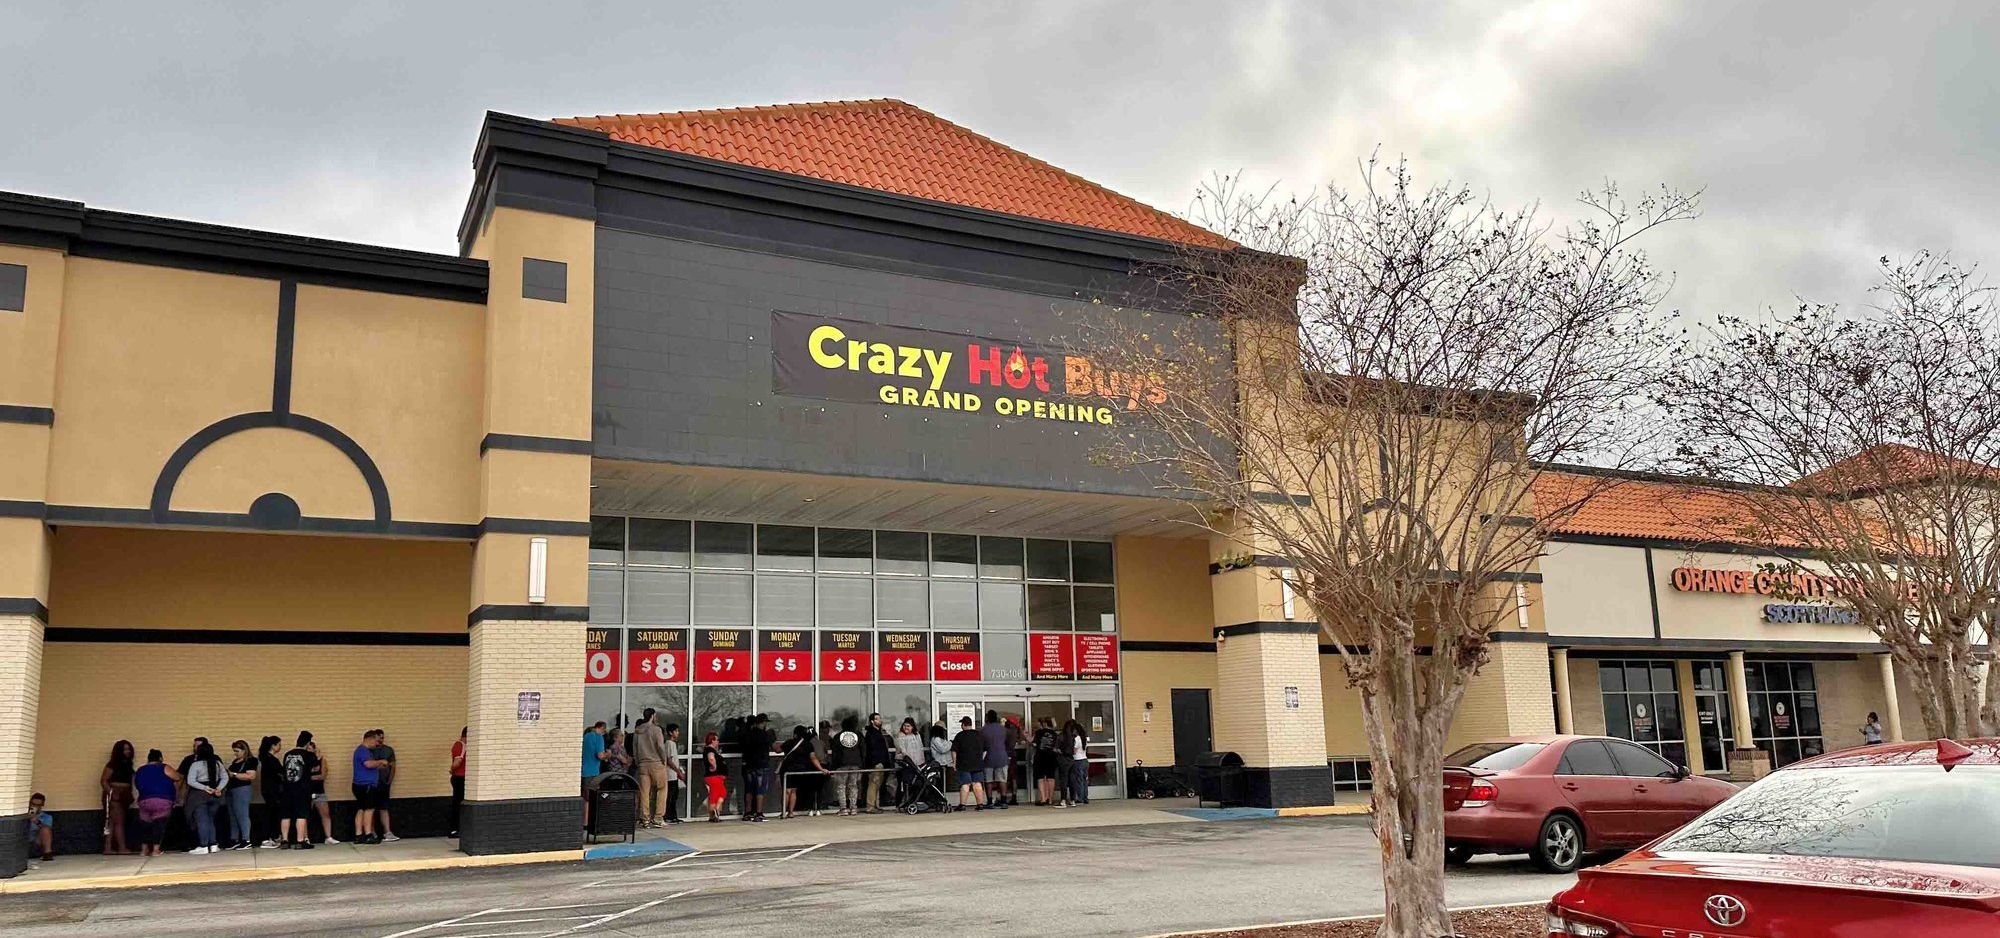 Save big at Crazy Hot Buys !!! #crazyhotbuys #orlando #